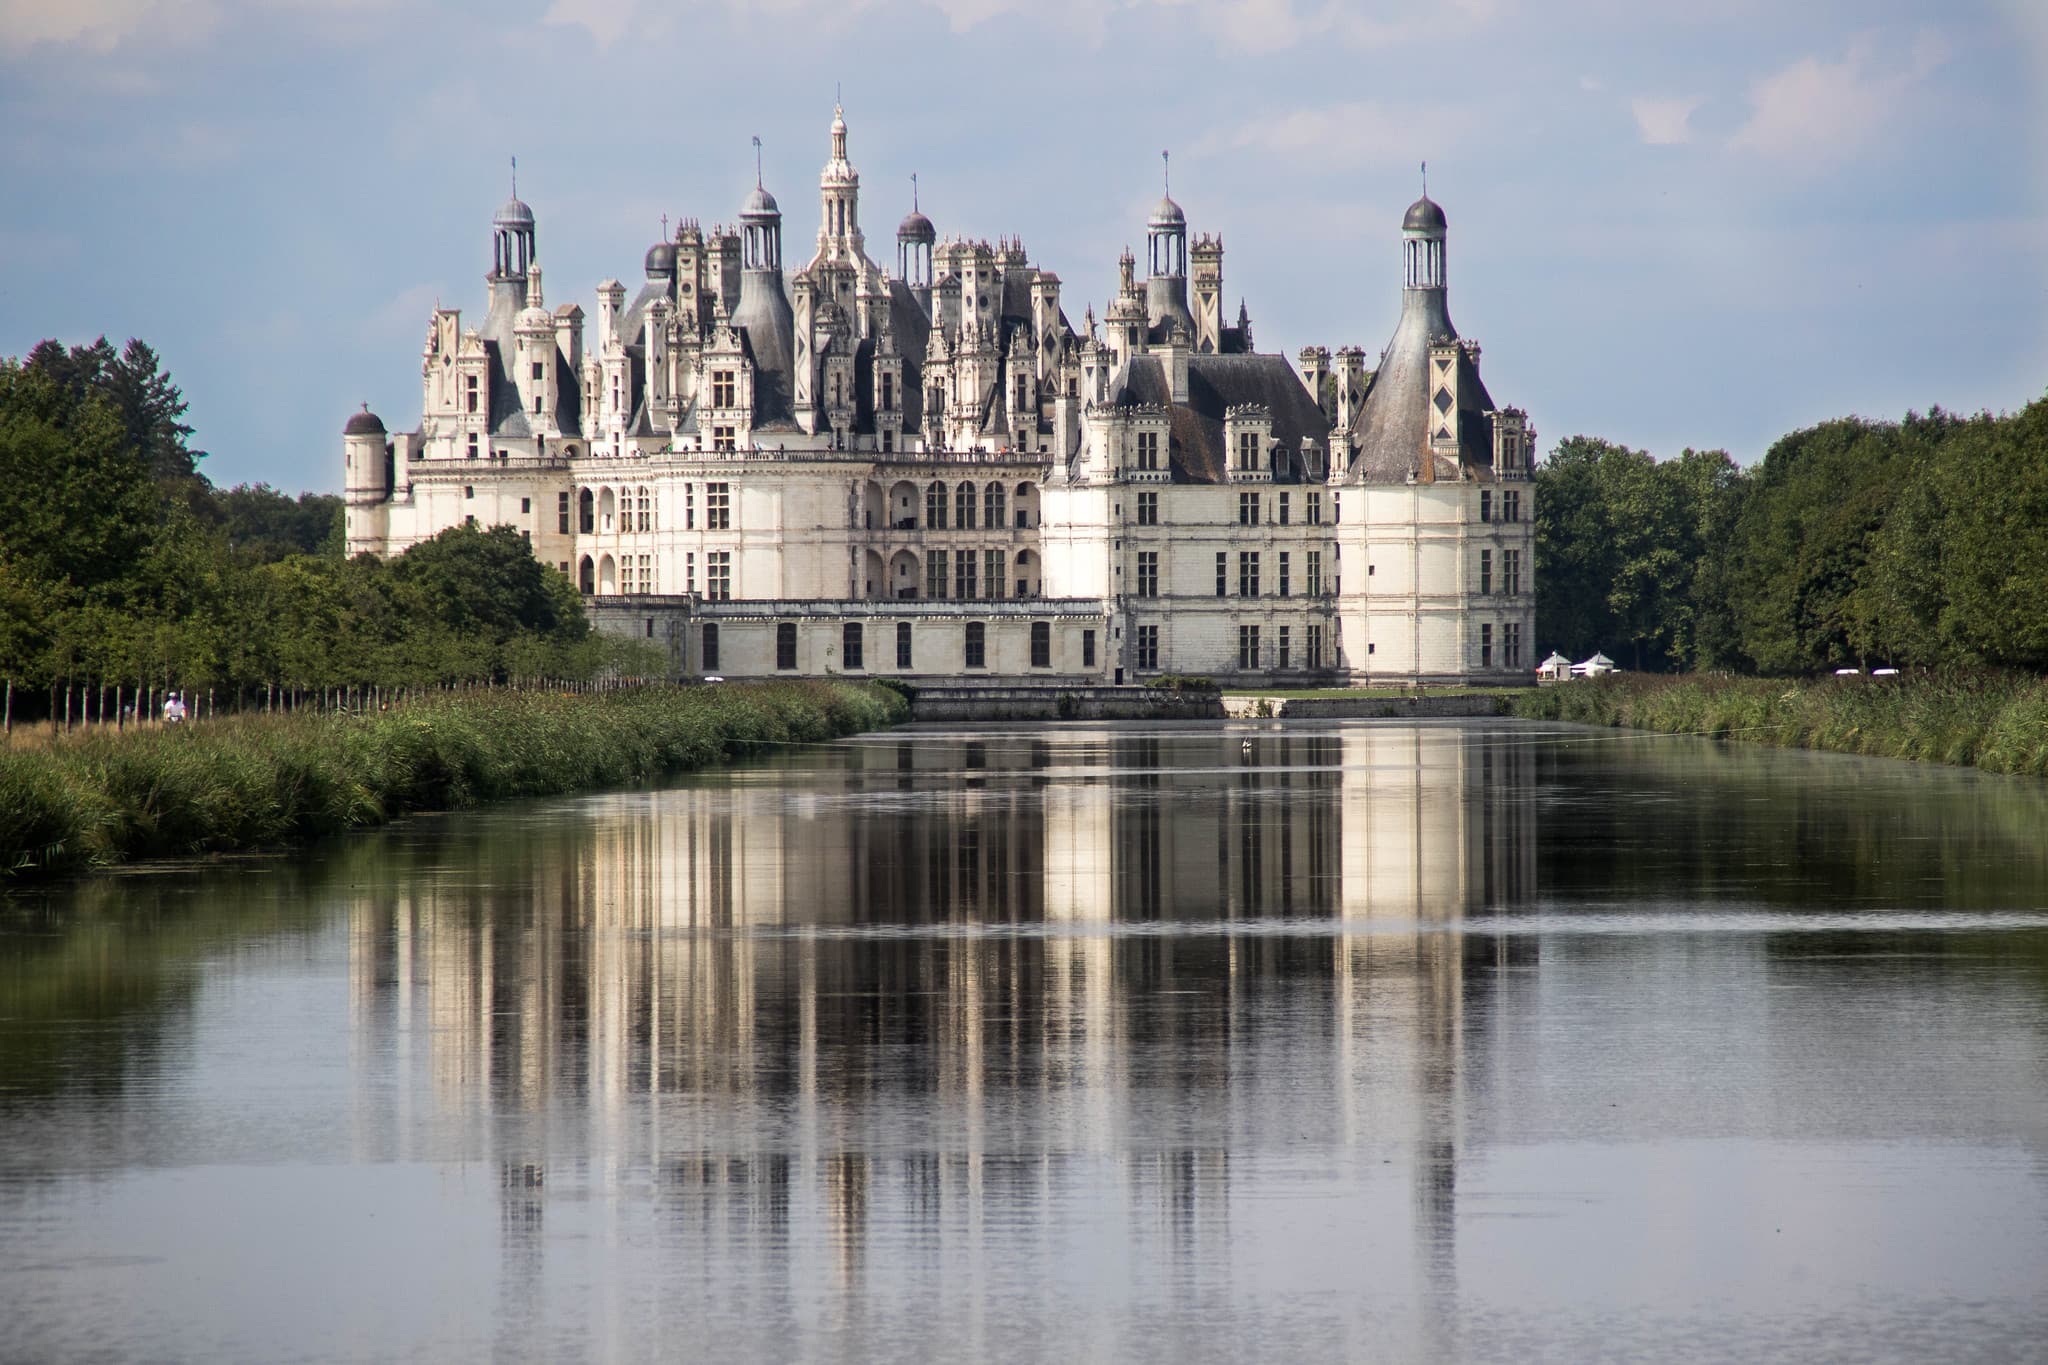 Шамбор — замок времен Ренессанса во Франции: история, архитектура, достопримечательности